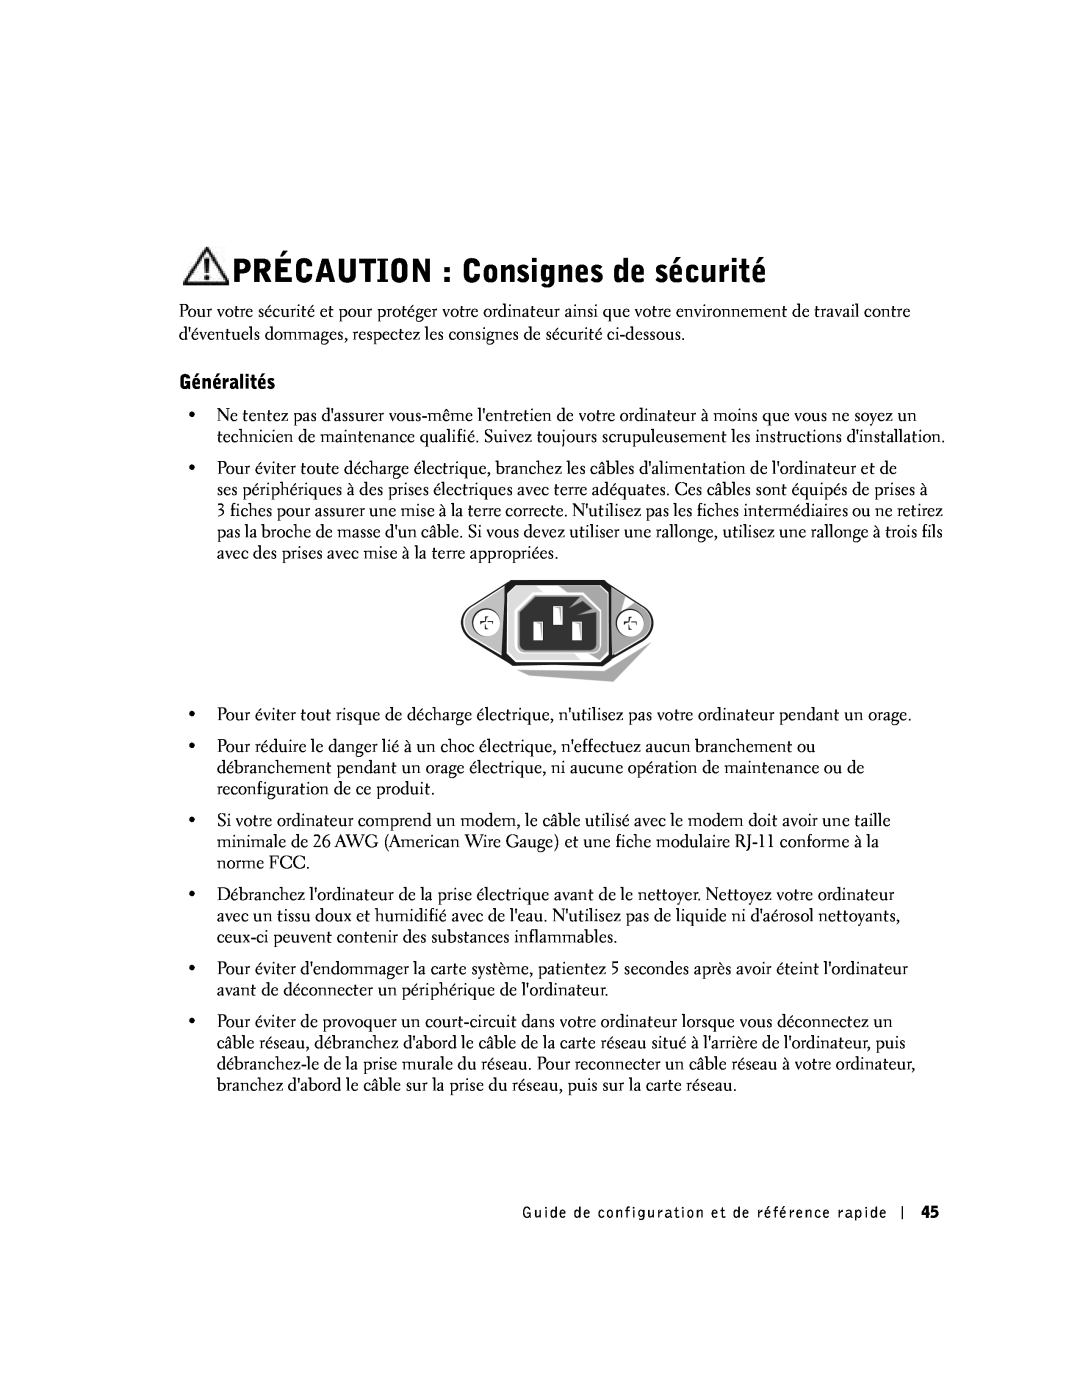 Dell SX manual PRÉCAUTION Consignes de sécurité, Généralités 